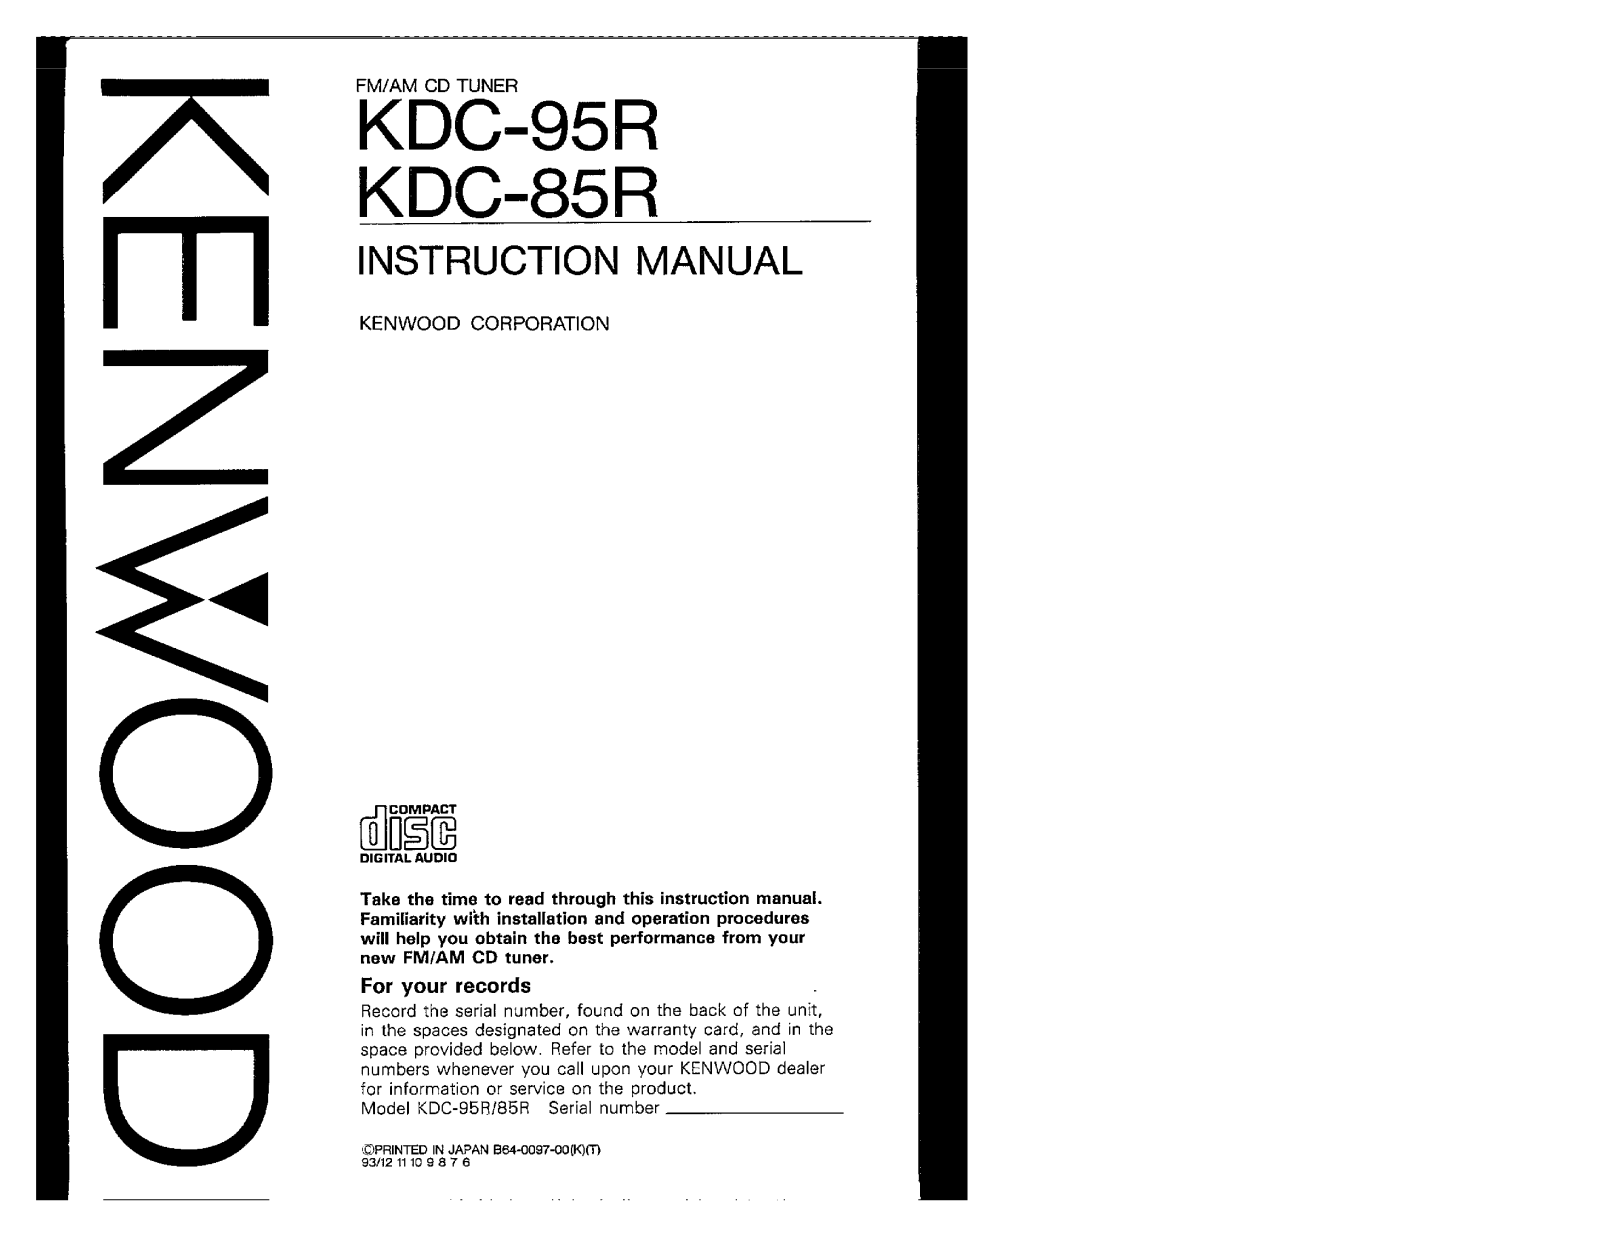 Kenwood KDC-95R, KDC-85R Owner's Manual